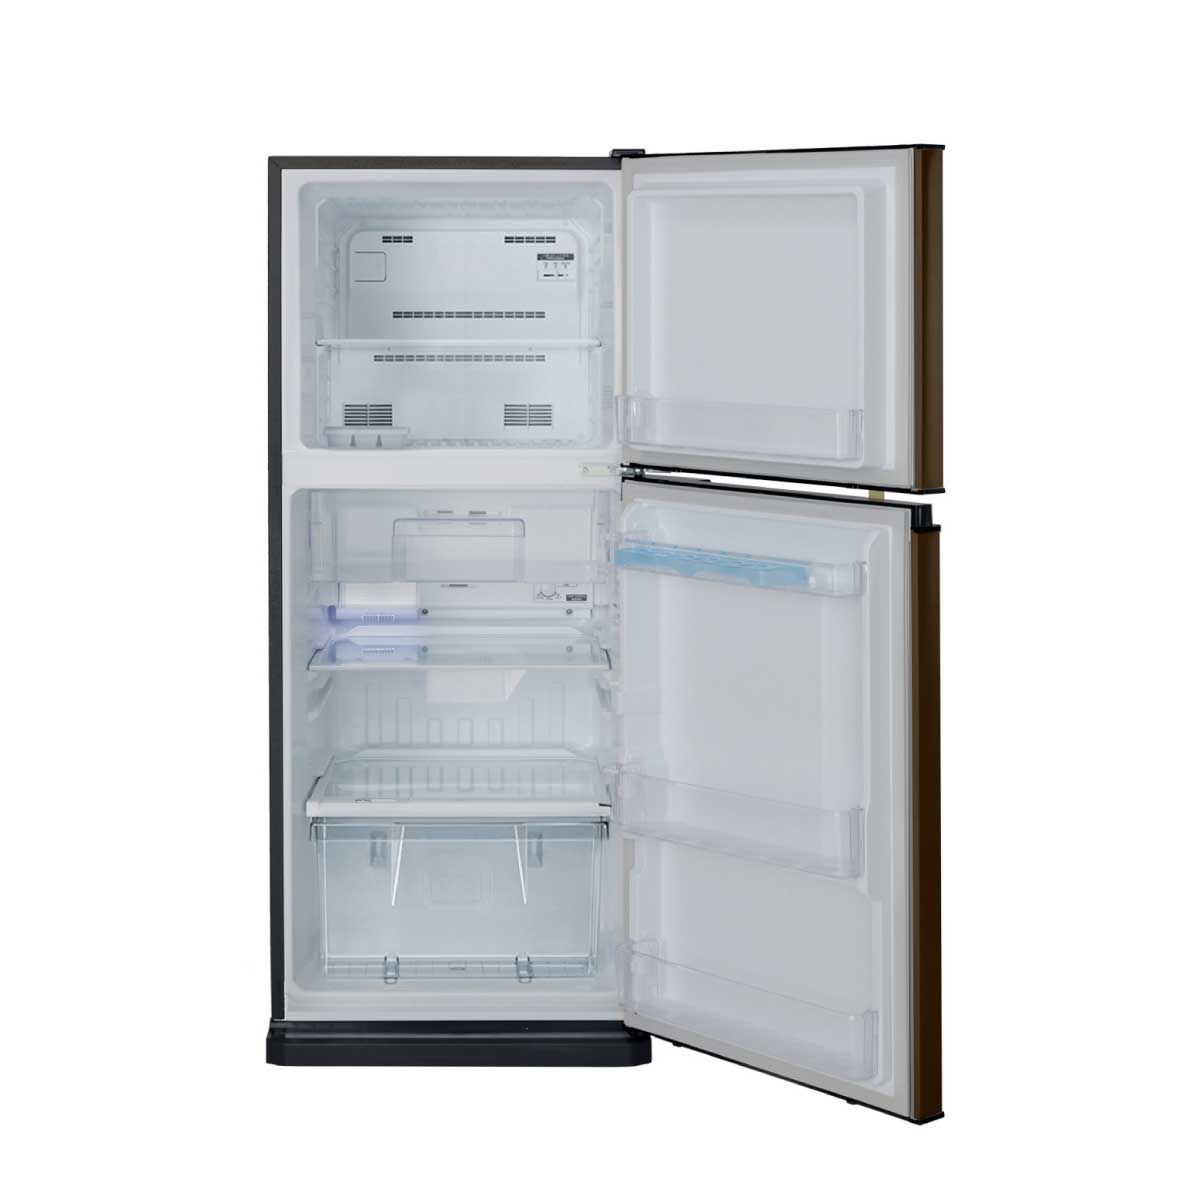 MITSUBISHI ELECTRIC ตู้เย็น 2 ประตู 7.3คิว MINUS ION สีน้ำตาลคอปเปอร์ รุ่น MR-FV22T